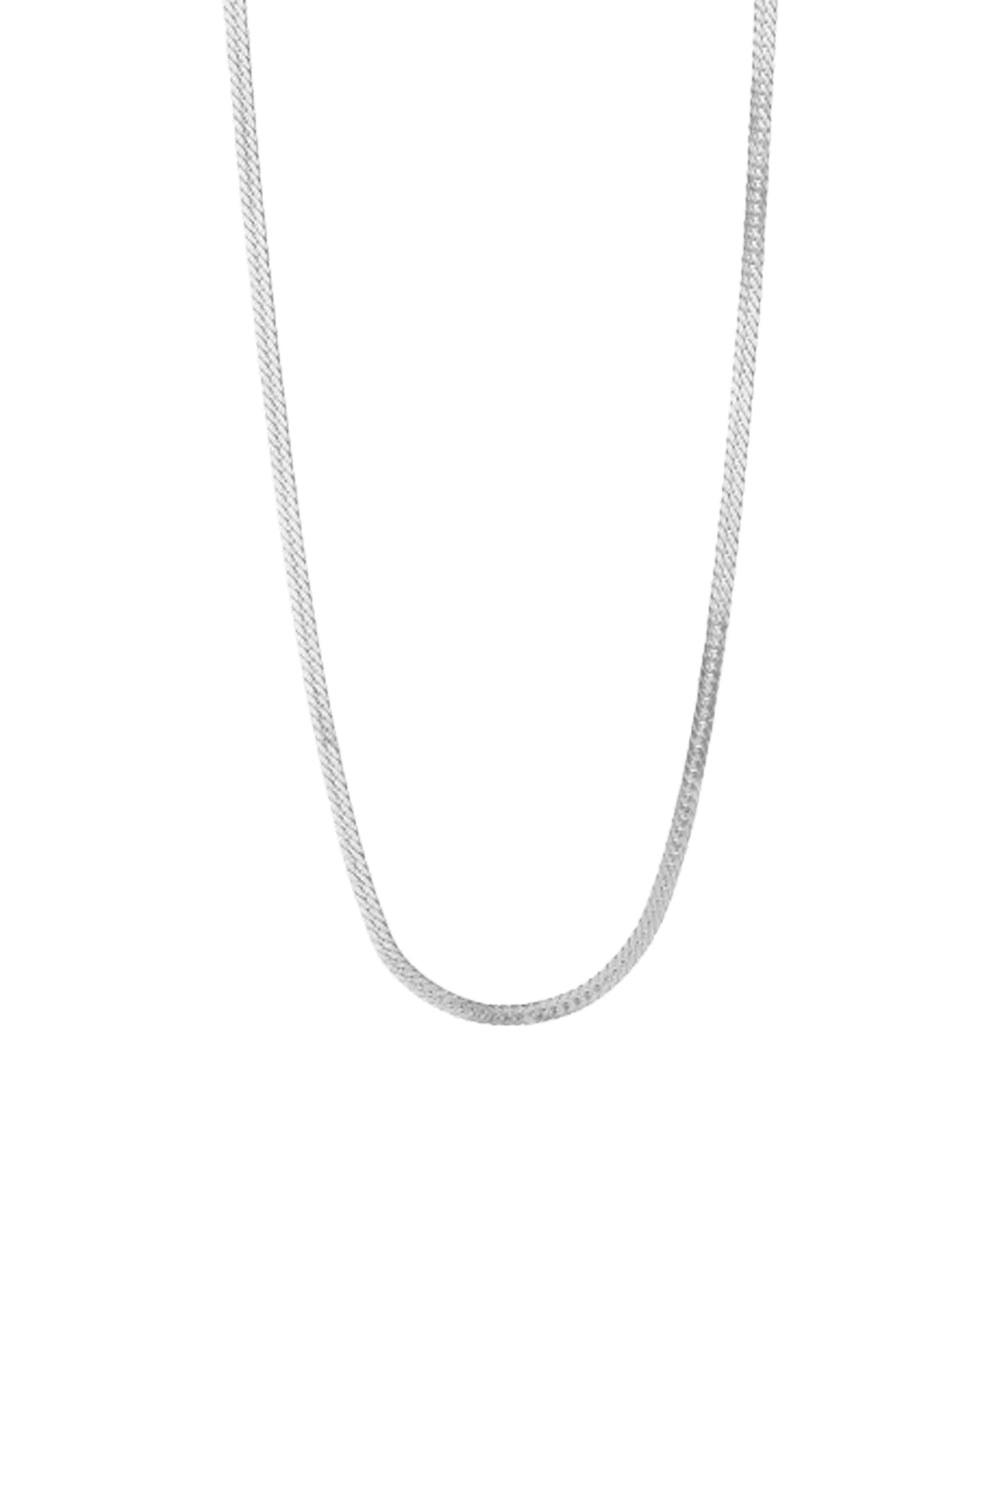 Short Snake Necklace - Silver - Stine A